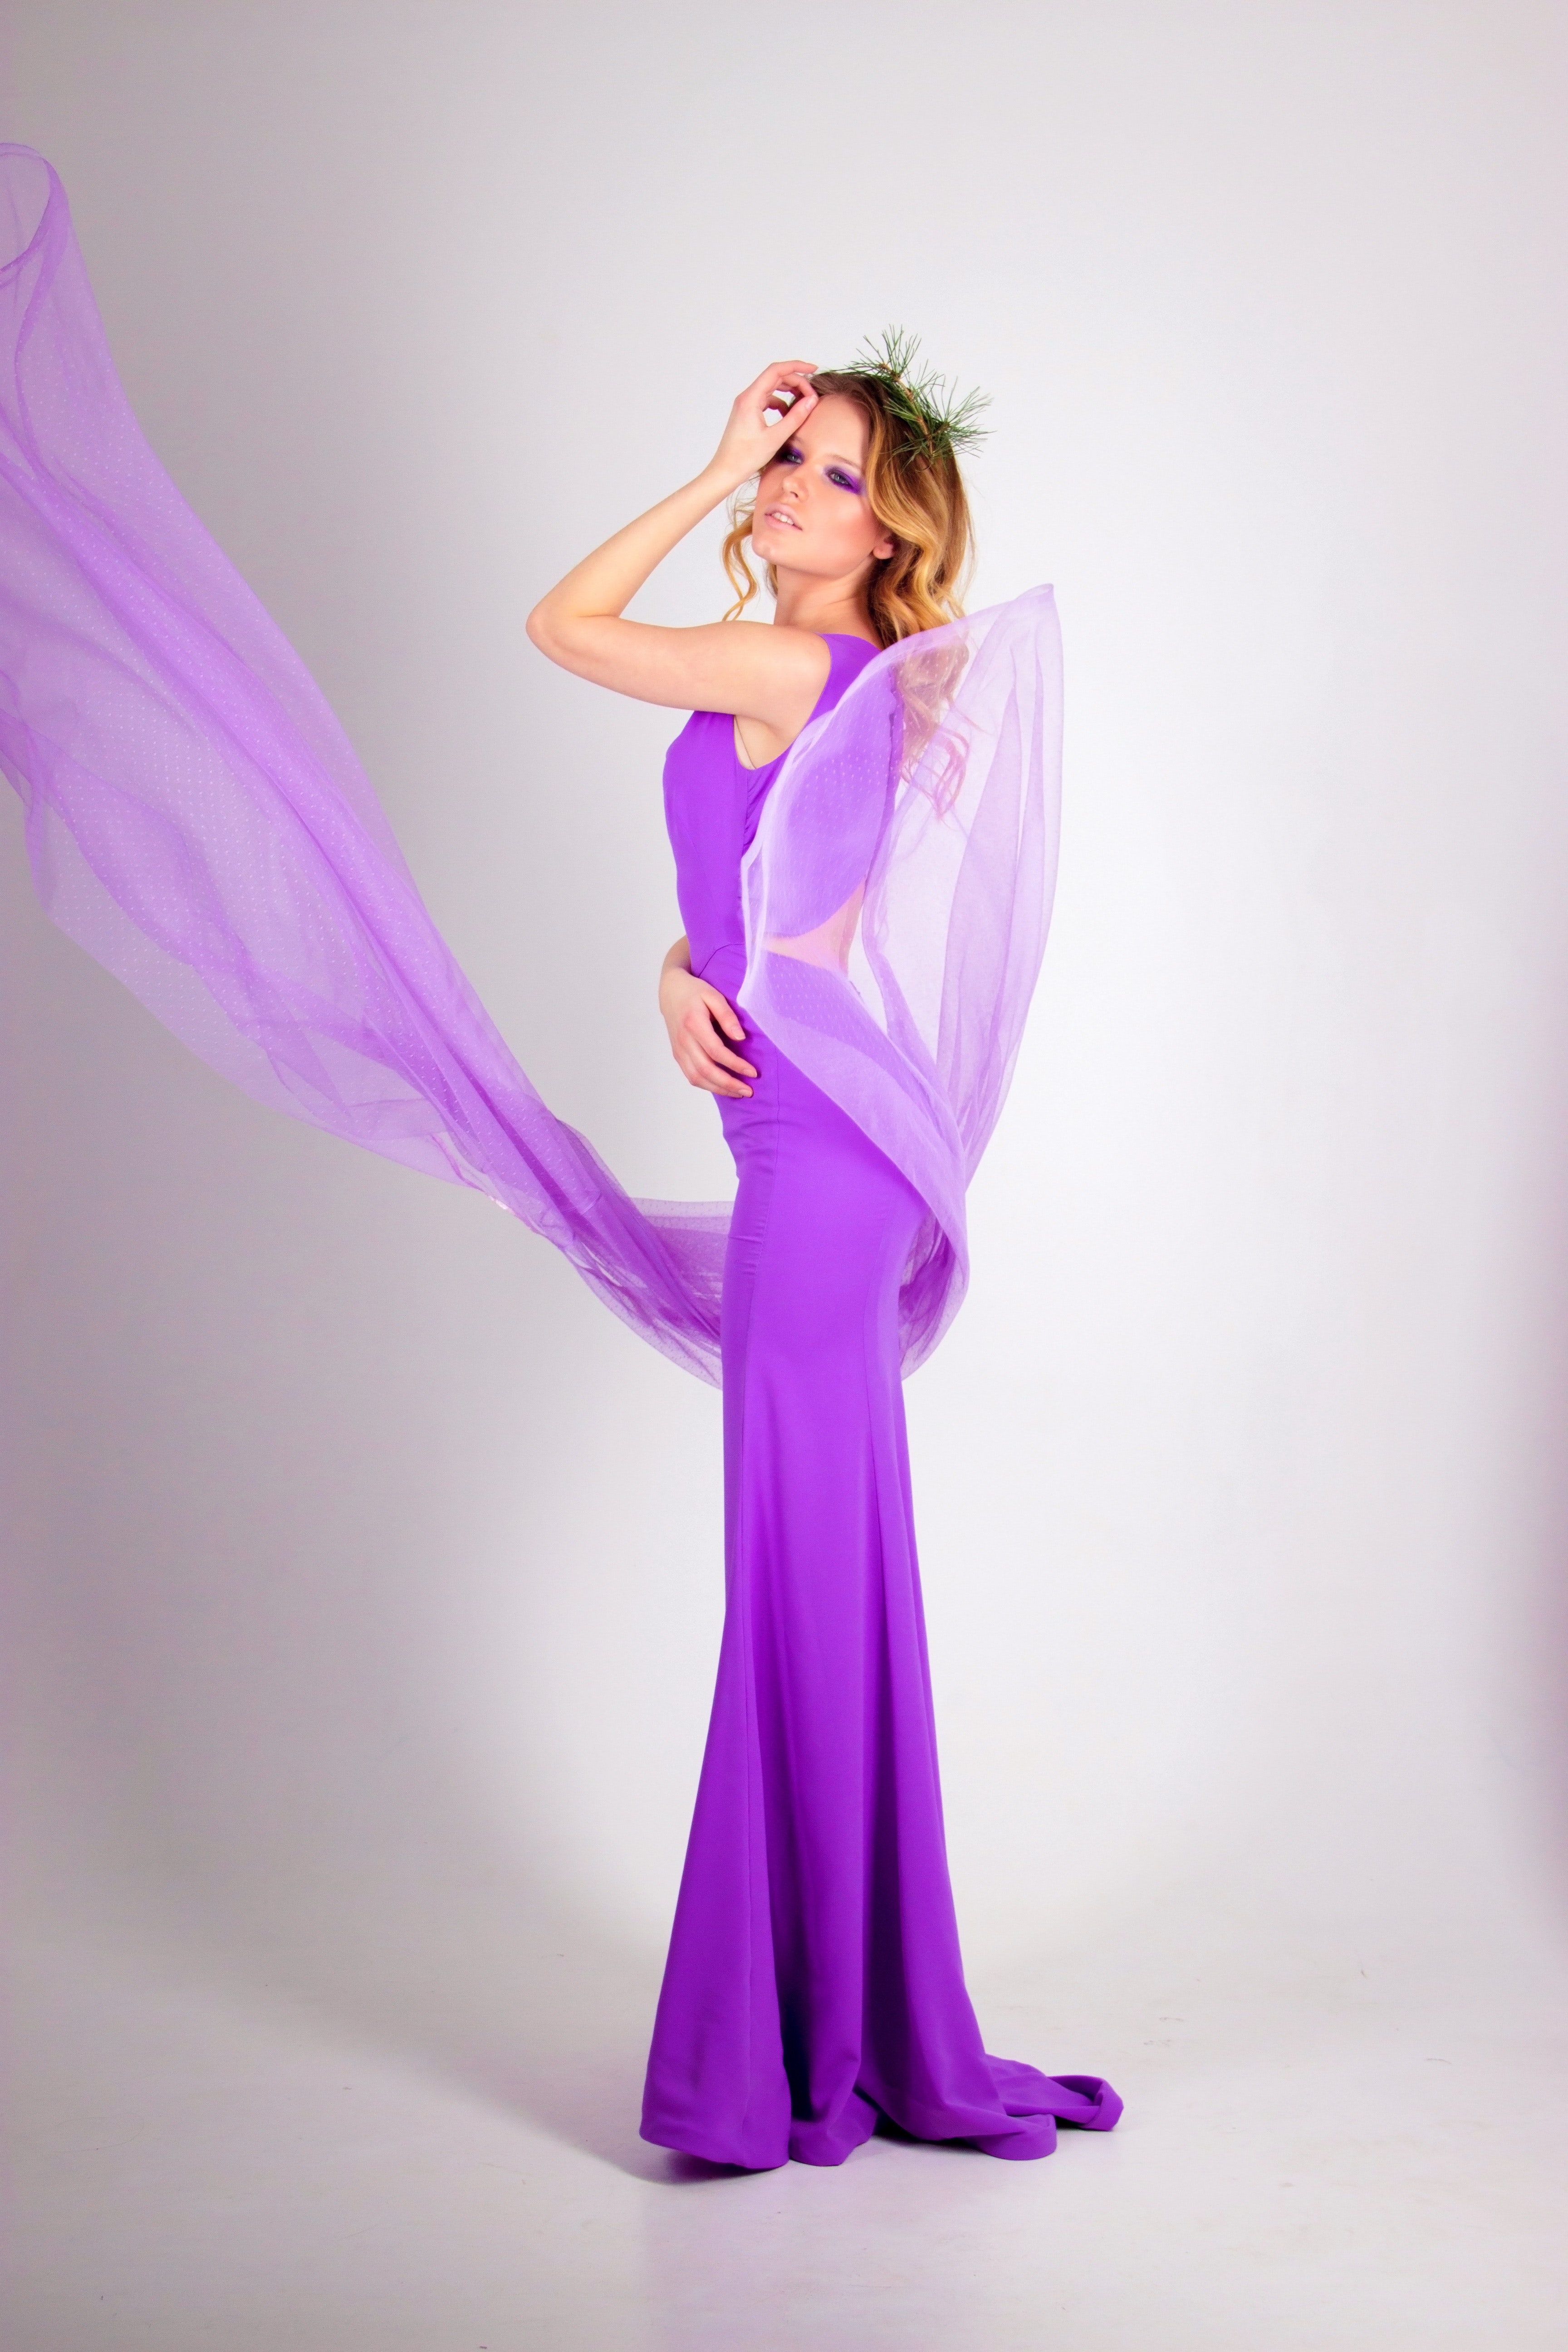 Photo shoot of woman wearing purple sleeveless long dress